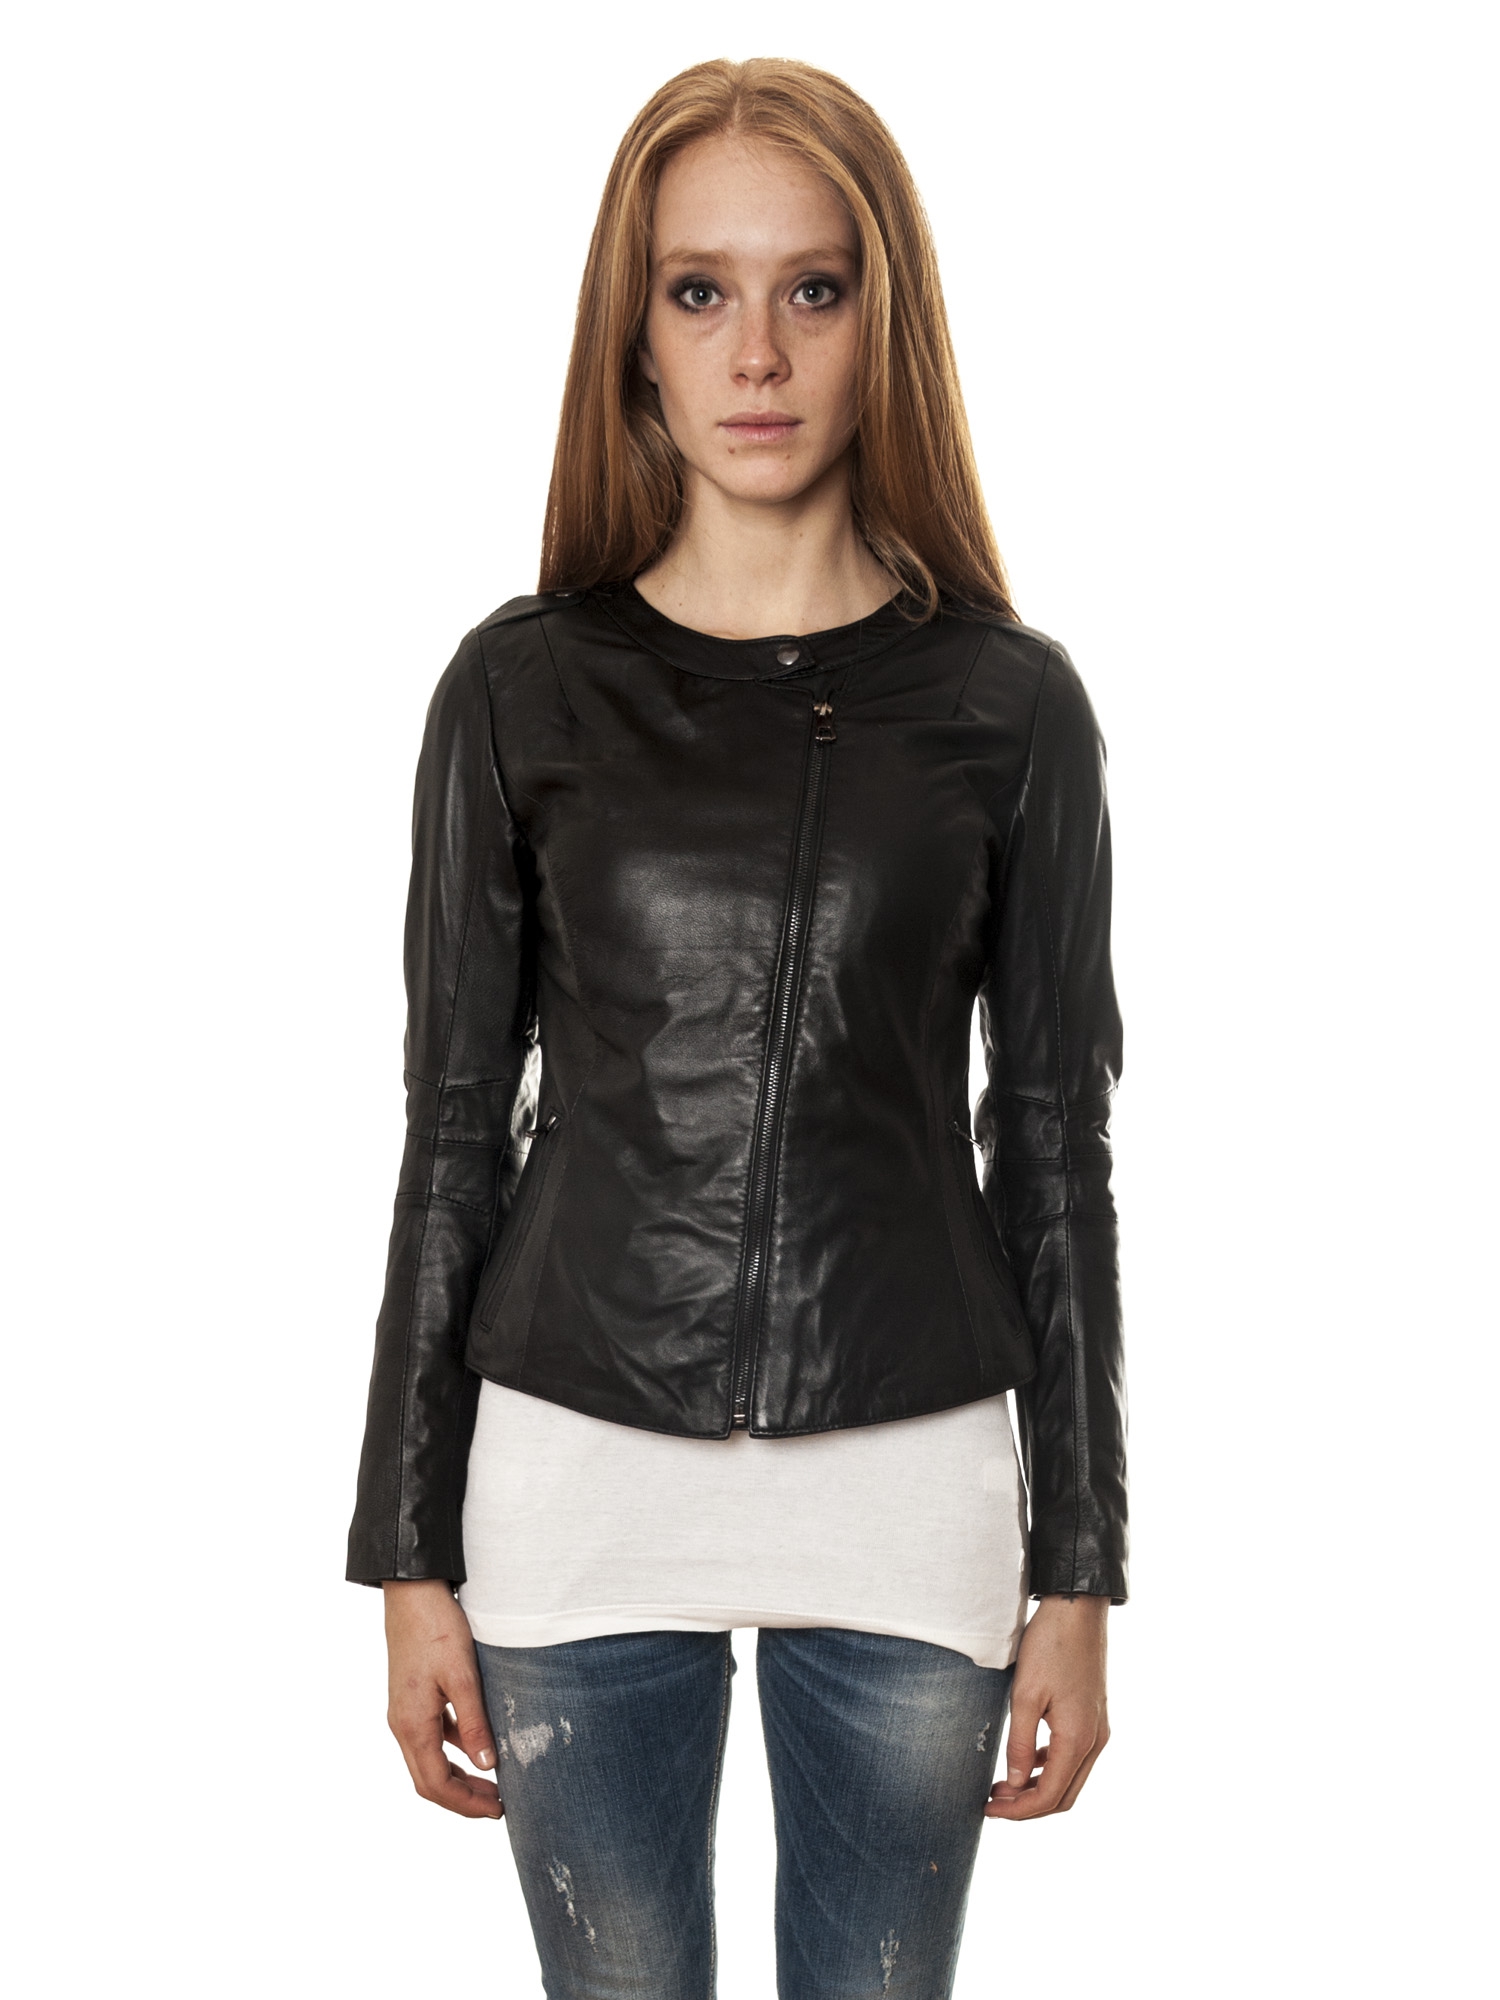 Дамско кожено яке с асиметричен цип в черен цвят от Mangotti | Secretzone.bg